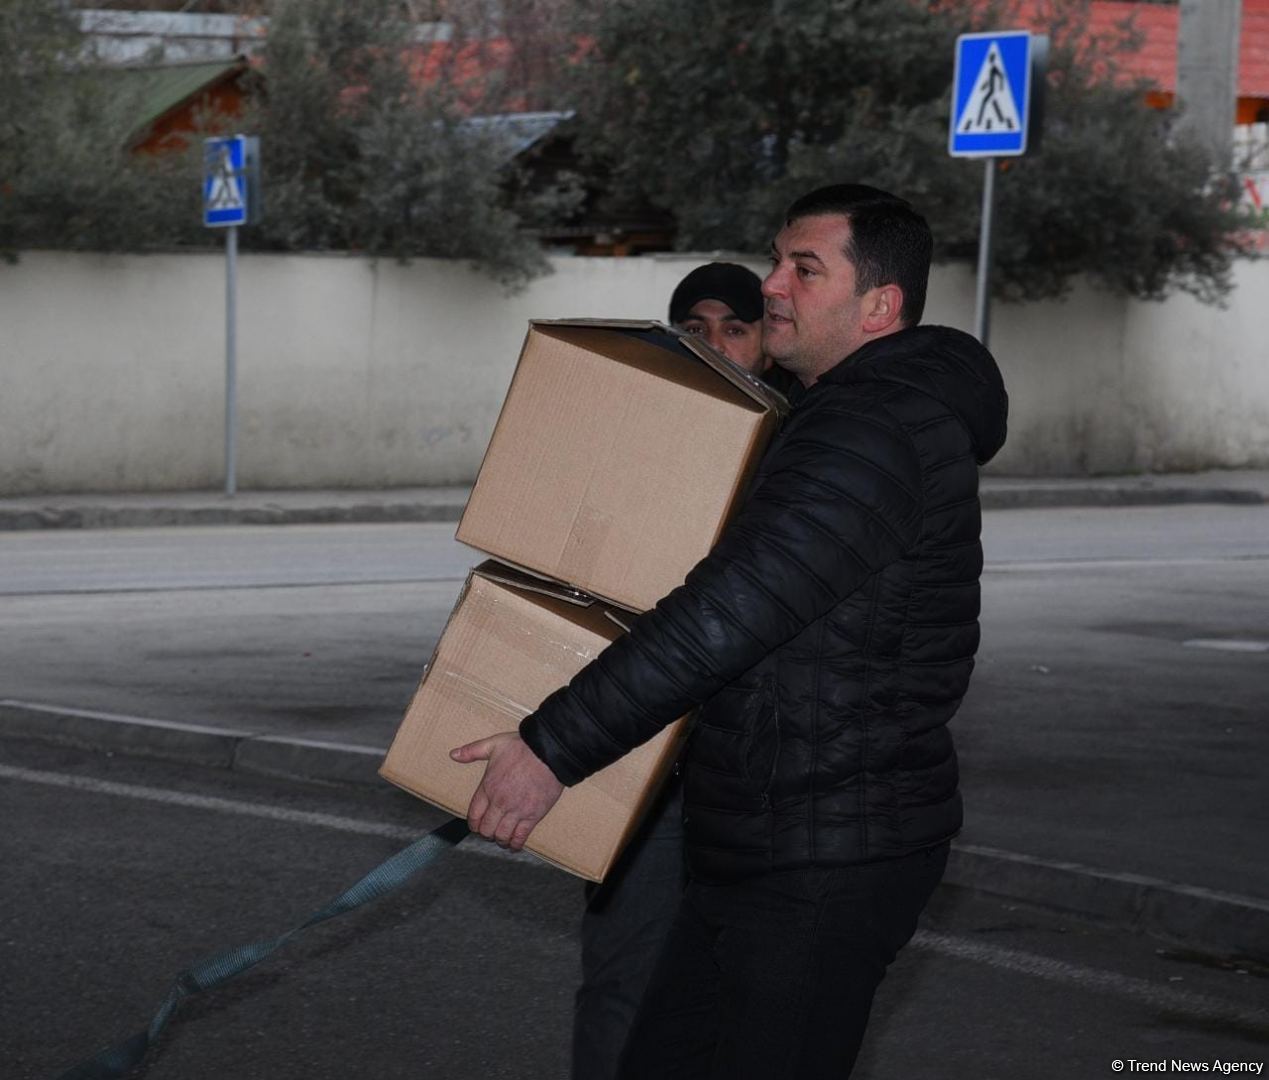 Türkiyə üçün yardım toplanması davam edir - Ünvan dəyişib (FOTO/VİDEO)